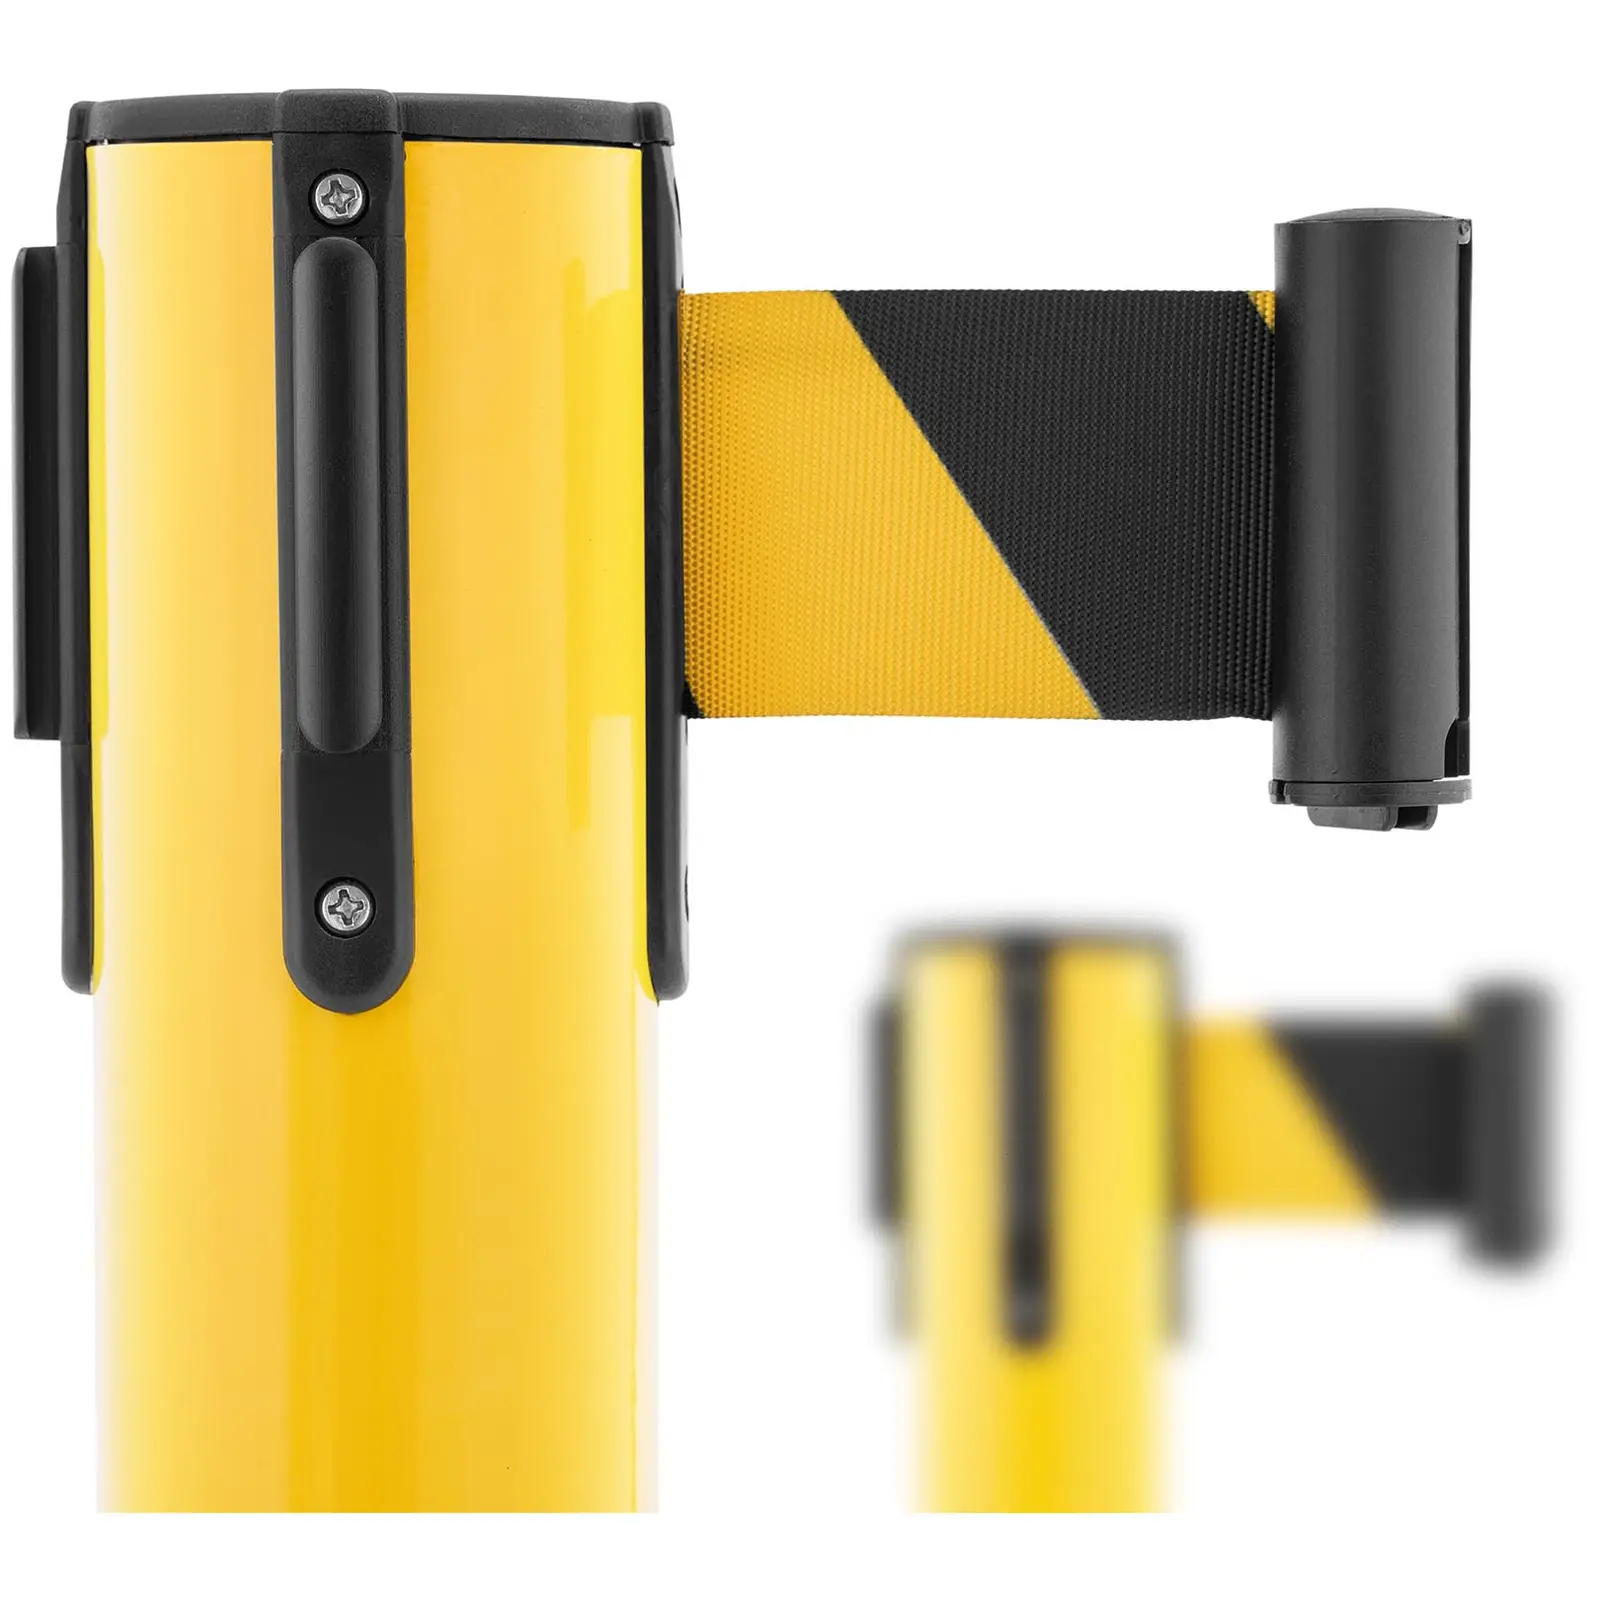 2 postes separadores com fita - 200 cm - amarelo e preto